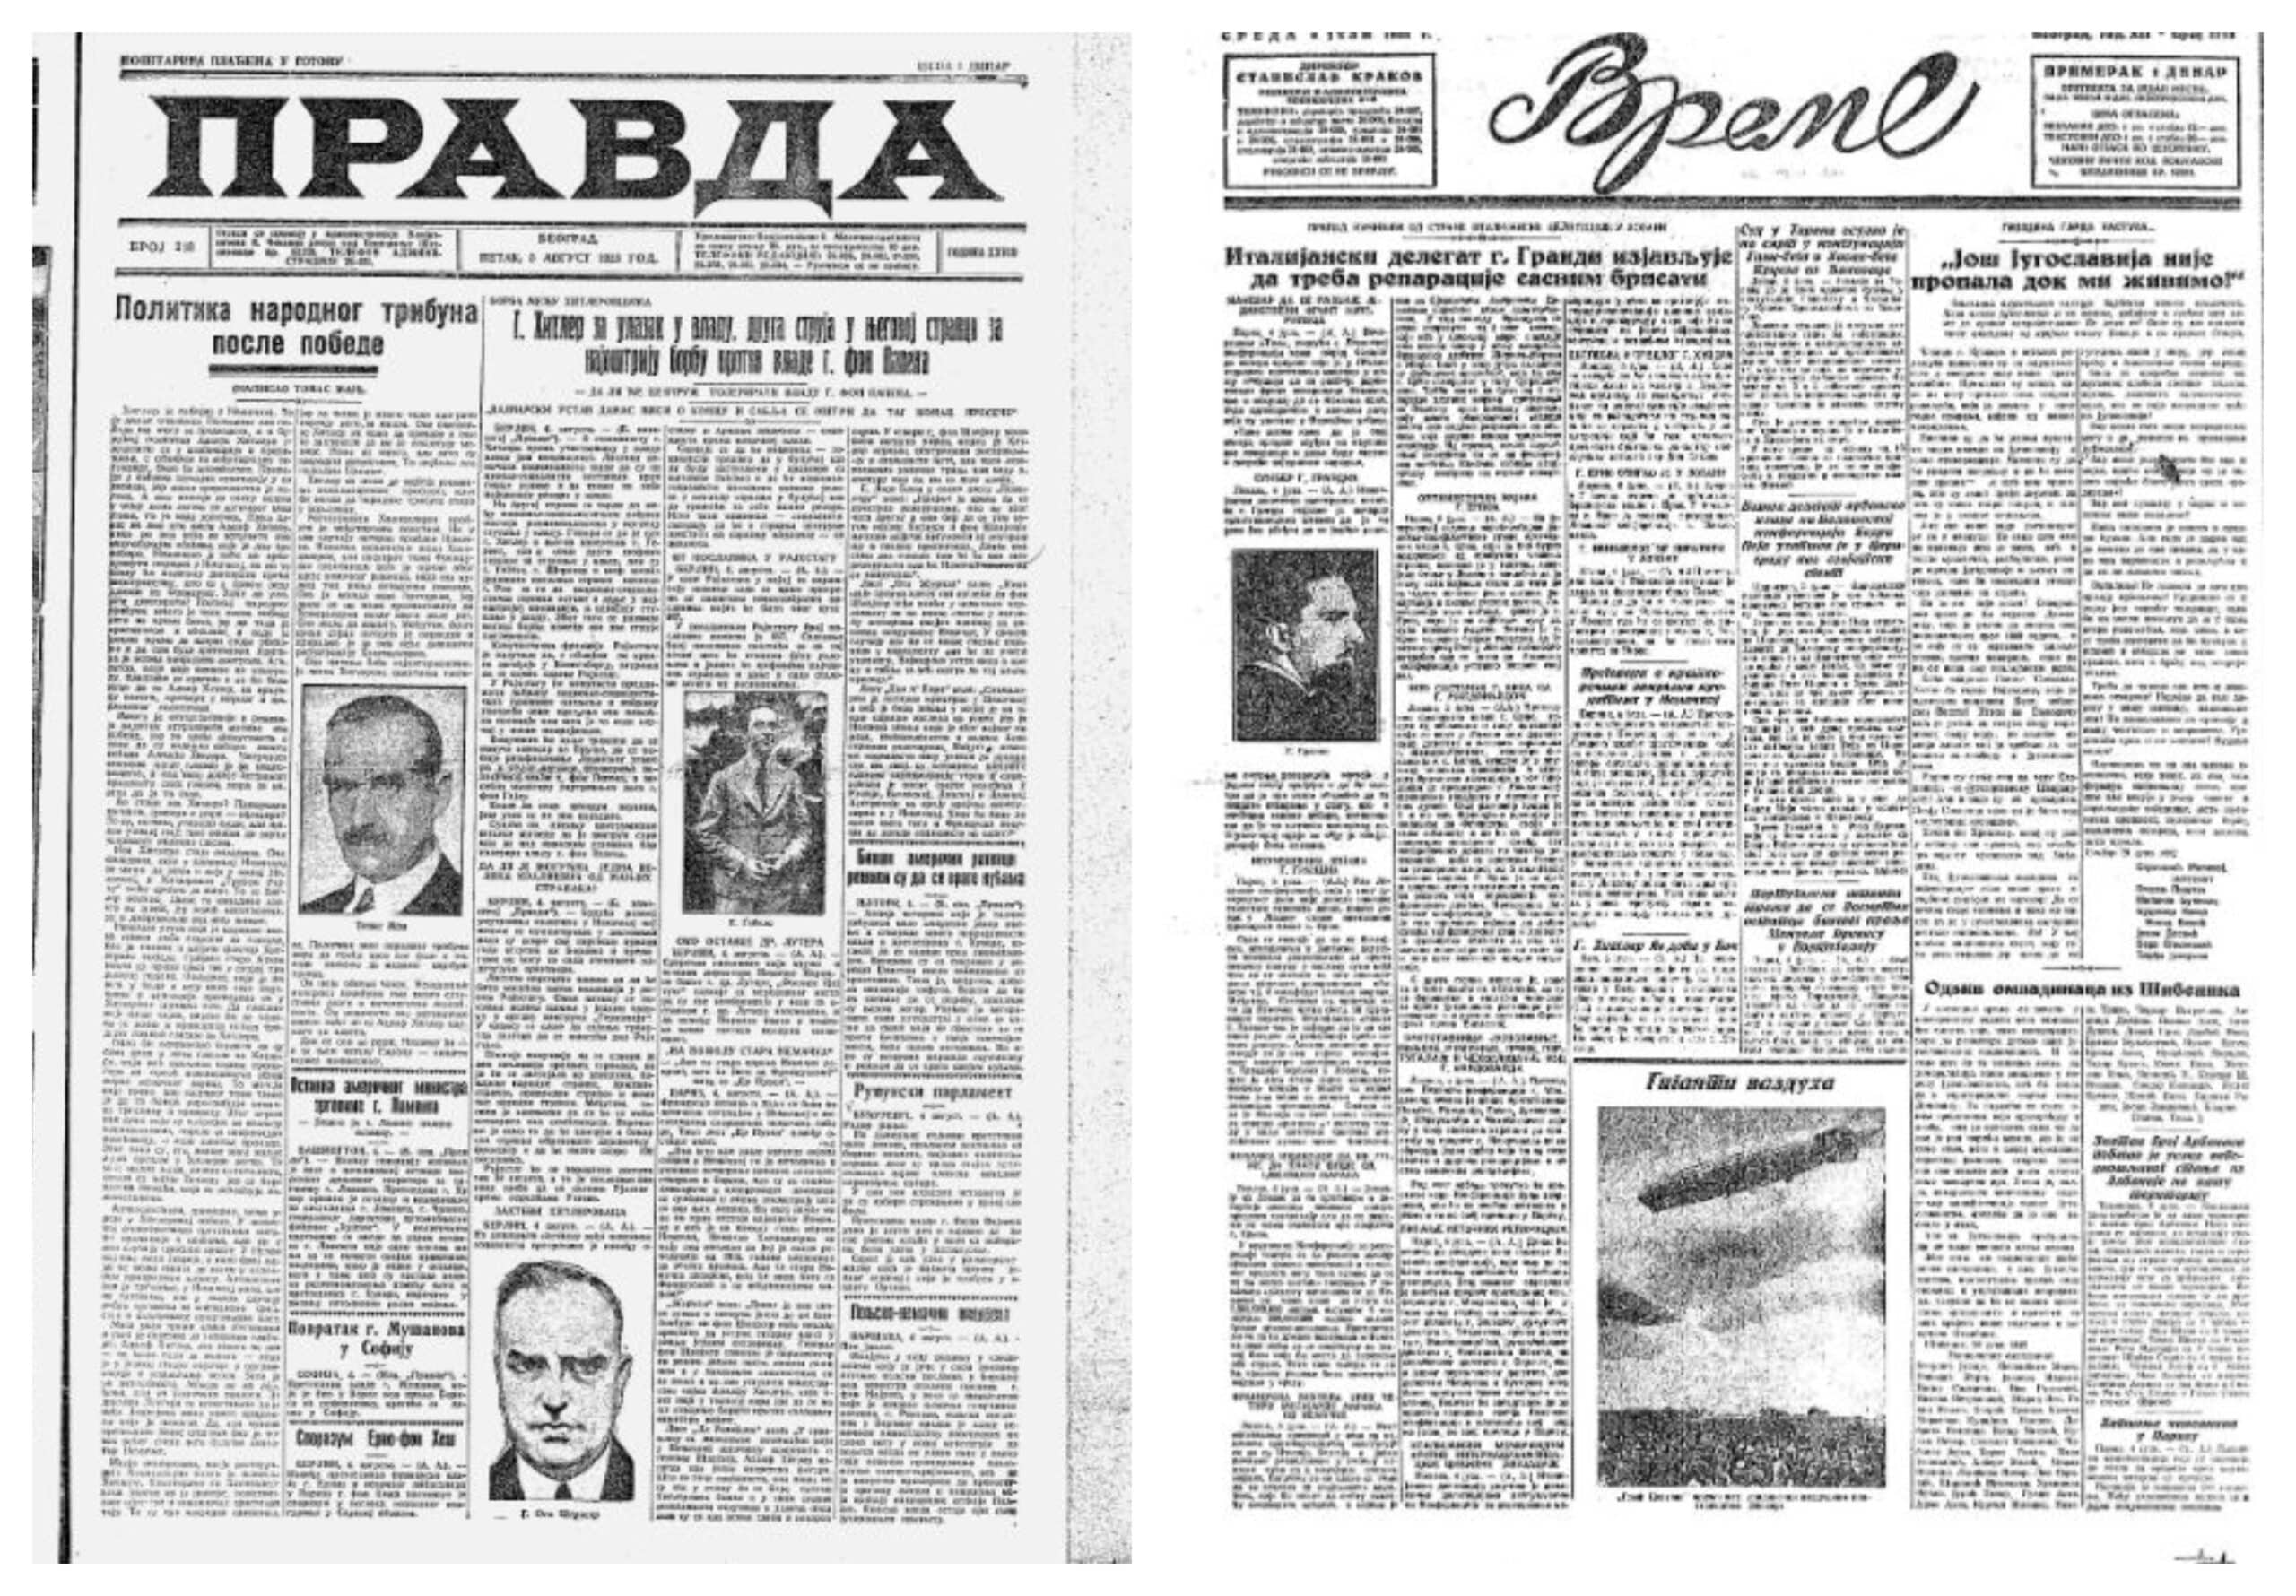 "Objektivno informisanje ni na periferiji pameti autora i urednika": Kako su izgledali tabloidi u Jugoslaviji između dva rata 2